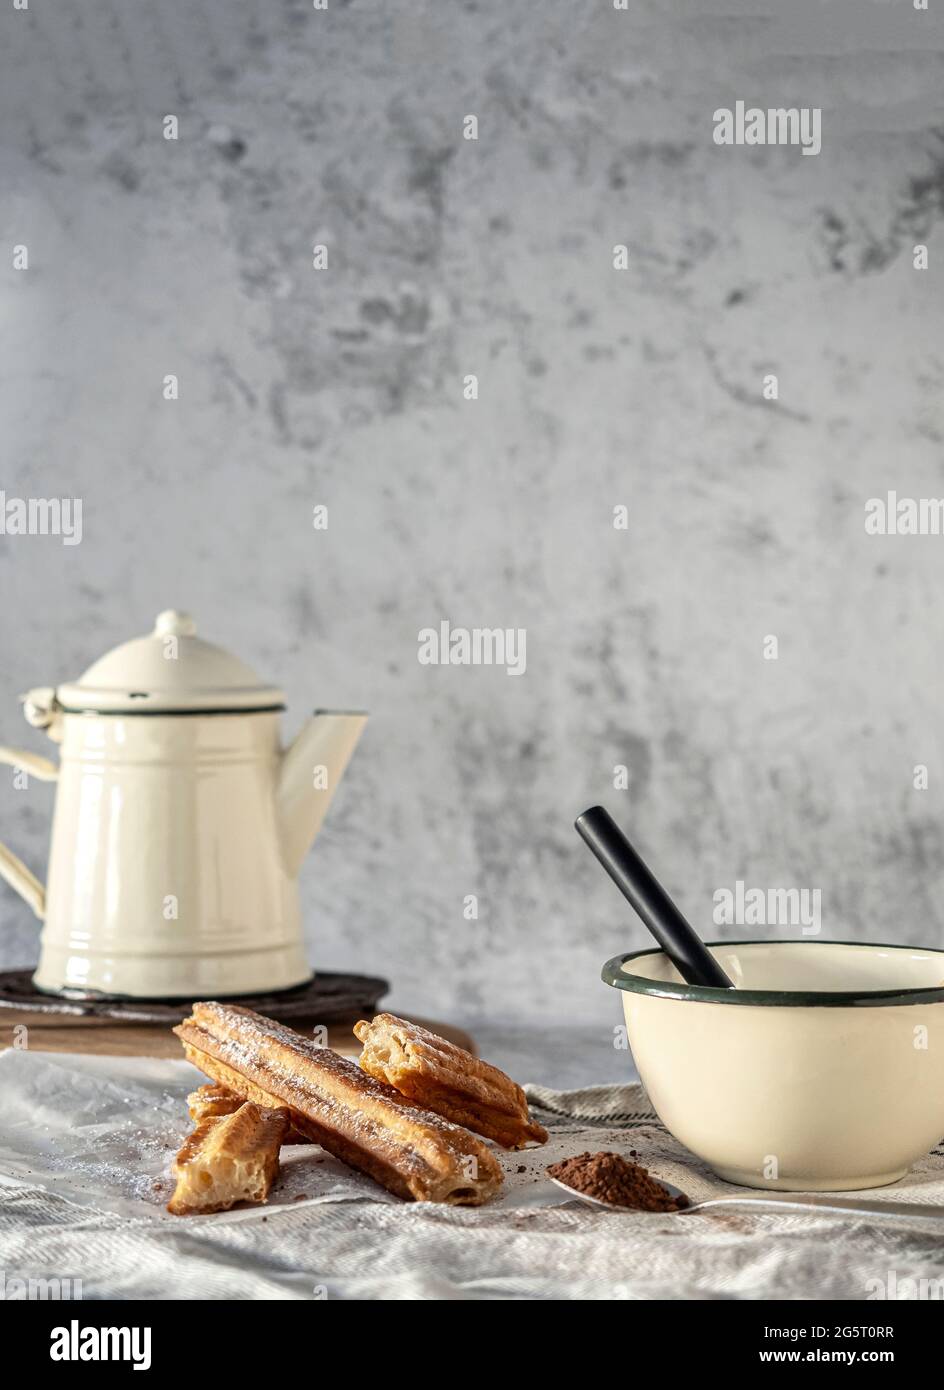 Typisch spanisches Frühstück oder Snack. Churros in Papiertüte mit Zucker.  Tasse mit Schokolade und Löffel mit Kakao. Weißer Hintergrund  Stockfotografie - Alamy